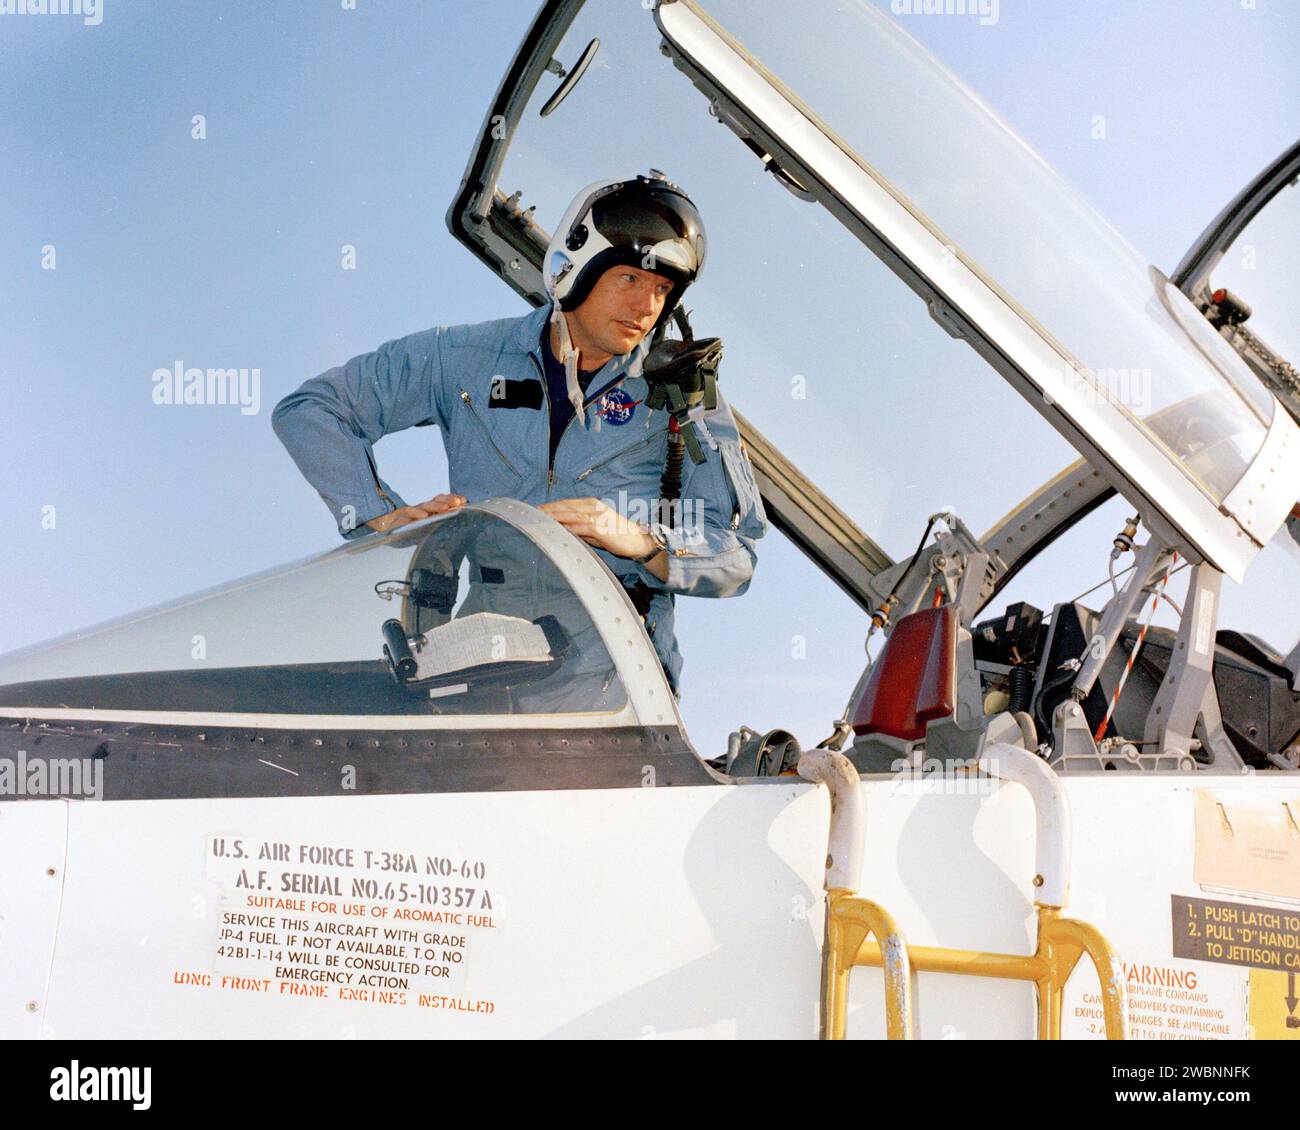 PATRICK AFB, Florida – Zur Vorbereitung der ersten Mondlandungsmission des Landes treffen die Besatzungsmitglieder der Apollo 11 auf der Patrick Air Force Base in Florida ein. Missionskommandant Neil Armstrong steigt aus einem T-38-Jet. Der Start auf einer Trägerrakete Saturn V ist für den 16. Juli 1969 geplant. Während des 11. Apollo wird das Kommandomodul Columbia in einer Umlaufbahn um den Mond bleiben, während das Mondmodul Eagle mit Armstrong und Aldrin auf der Mondoberfläche landet. Während der 2½-stündigen Erdoberfläche plant die Crew, Mondoberflächenmaterial für die Analyse auf der Erde zu sammeln. Stockfoto